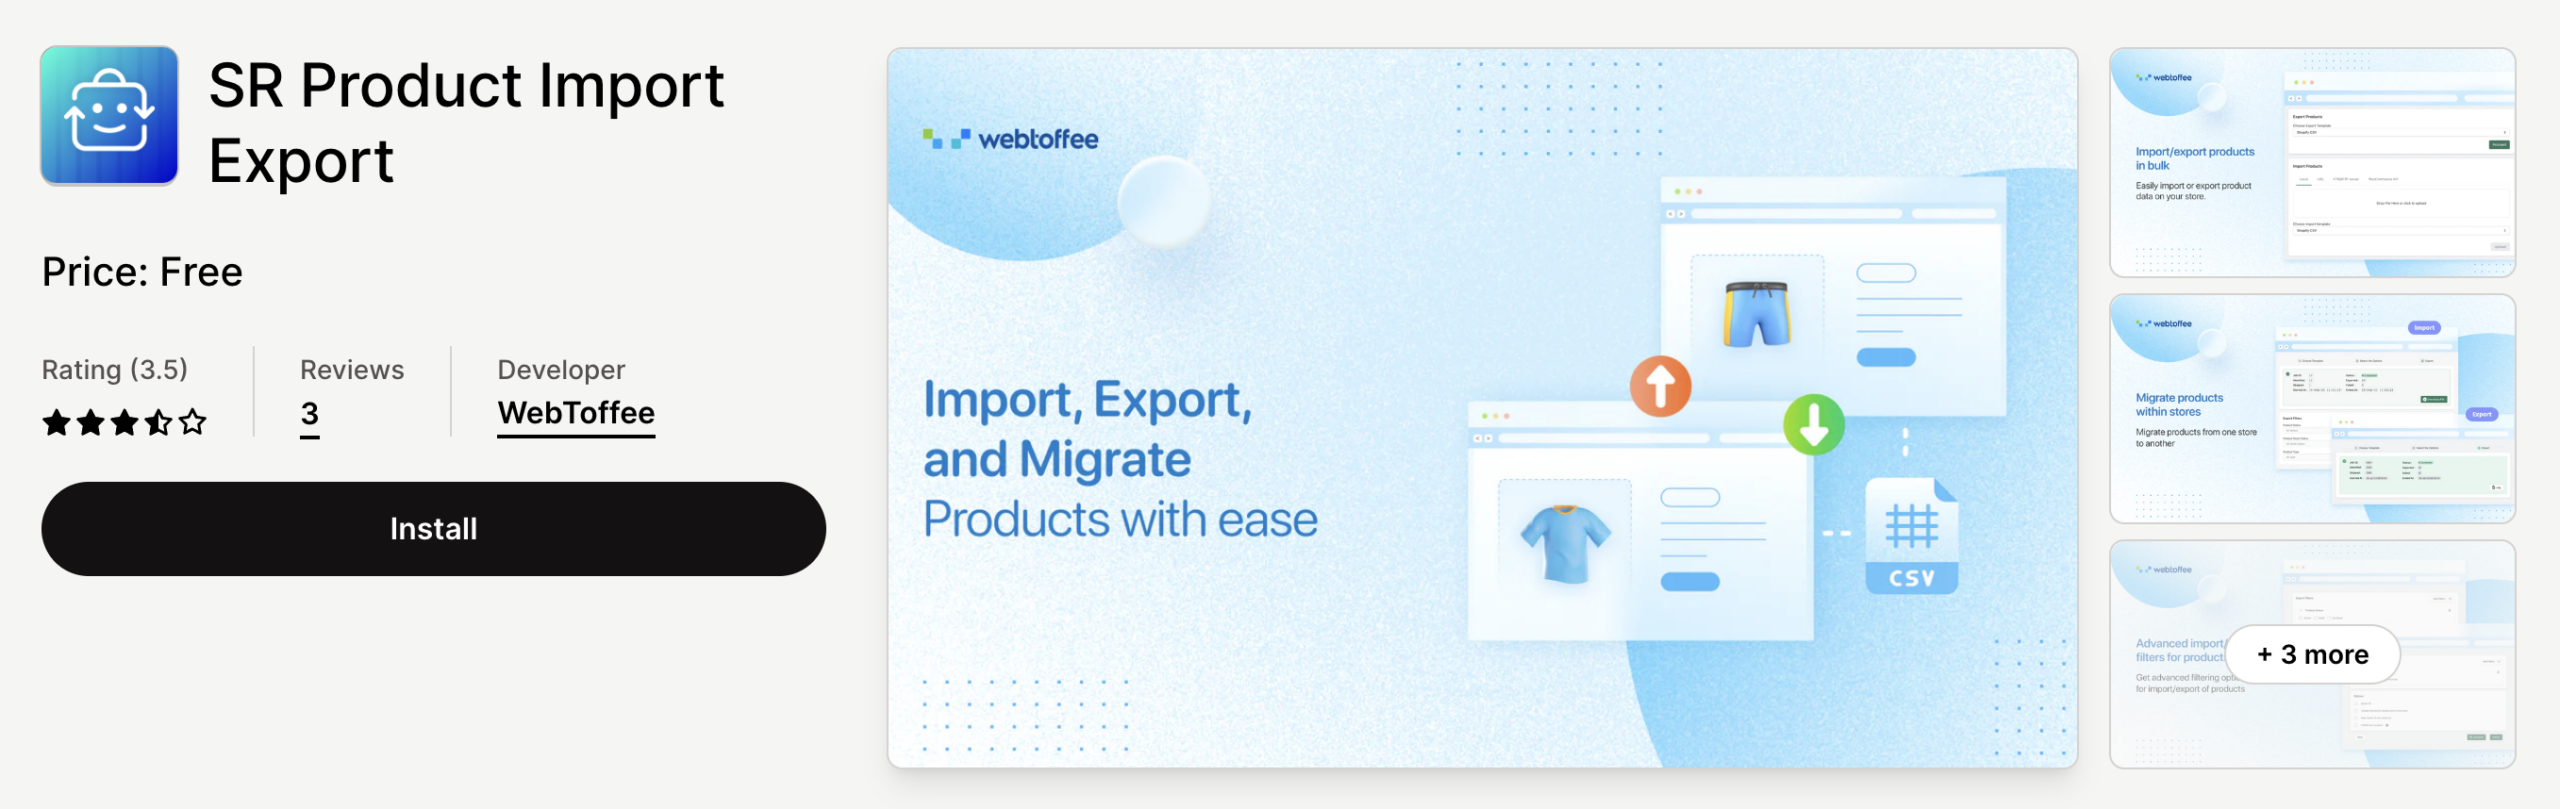 StoreRobo Product Import Export App